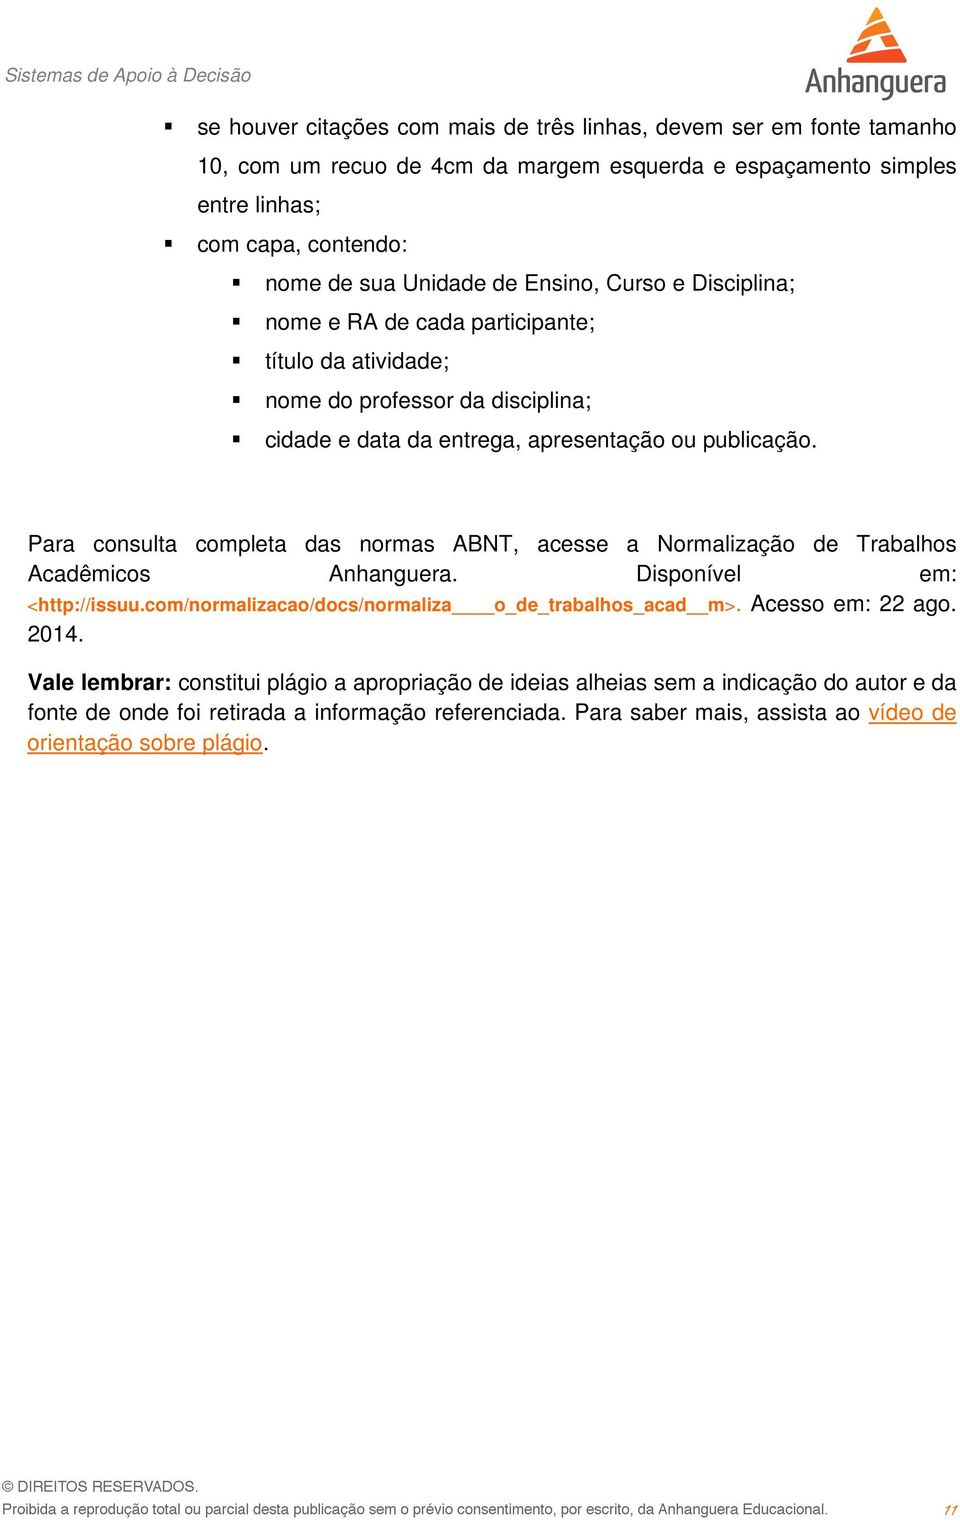 Para consulta completa das normas ABNT, acesse a Normalização de Trabalhos Acadêmicos Anhanguera. Disponível em: <http://issuu.com/normalizacao/docs/normaliza o_de_trabalhos_acad m>.